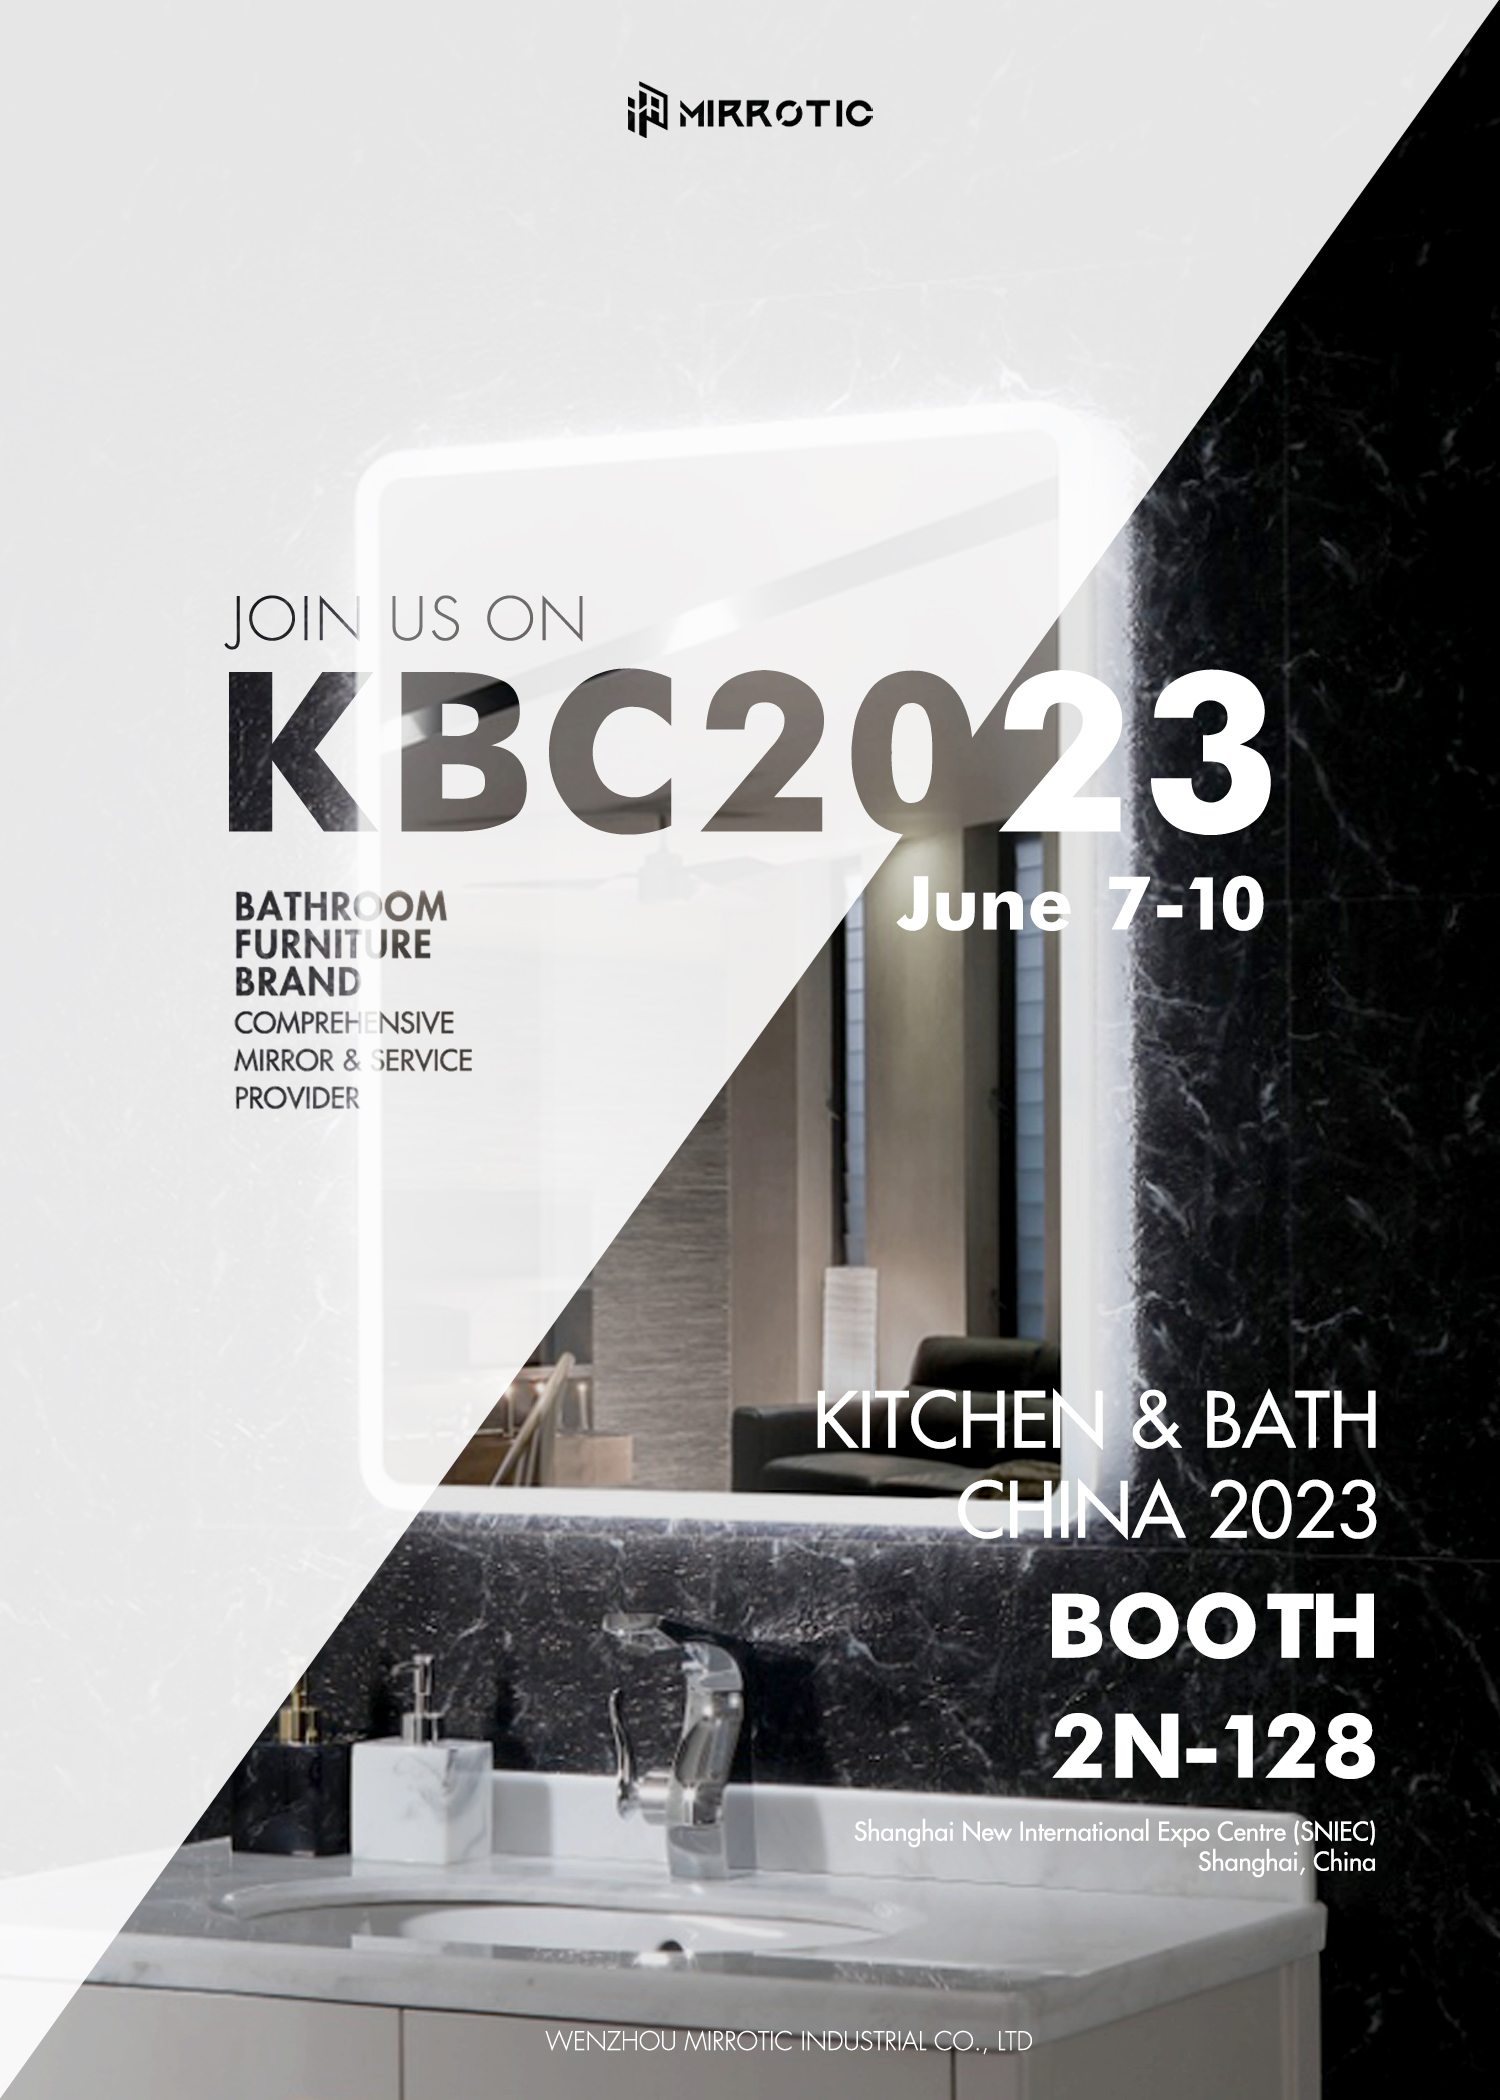 ¡La exposición KBC2023 ya está abierta y lo invitamos a visitar nuestro stand!